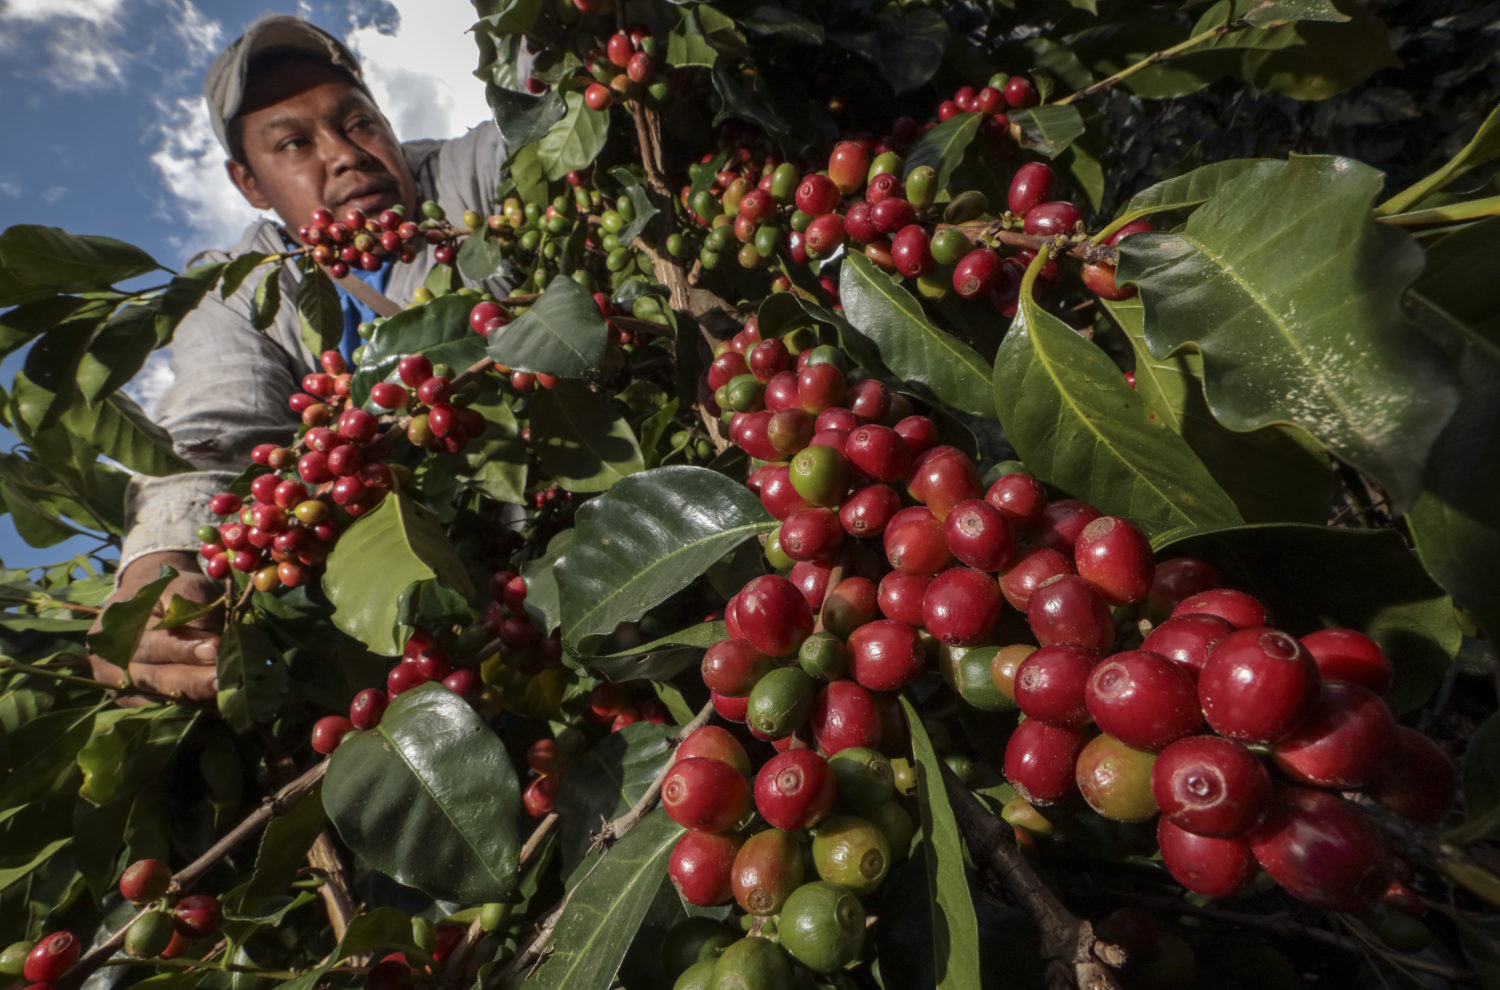 GrainChain’s Smart Contracts Unite Honduras Coffee Business